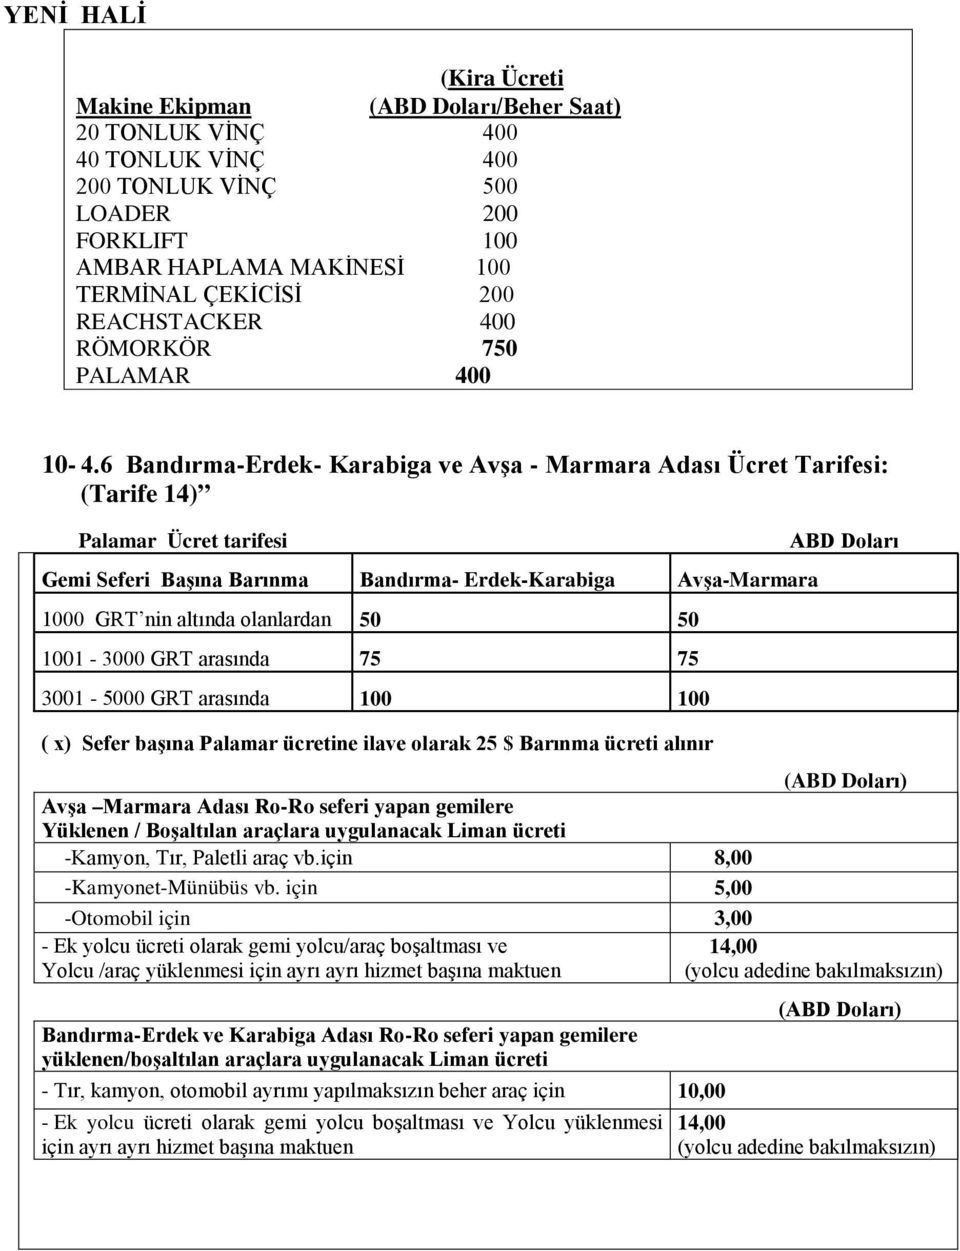 6 Bandırma-Erdek- Karabiga ve Avşa - Marmara Adası Ücret Tarifesi: (Tarife 14) Palamar Ücret tarifesi Gemi Seferi Başına Barınma Bandırma- Erdek-Karabiga Avşa-Marmara 1000 GRT nin altında olanlardan